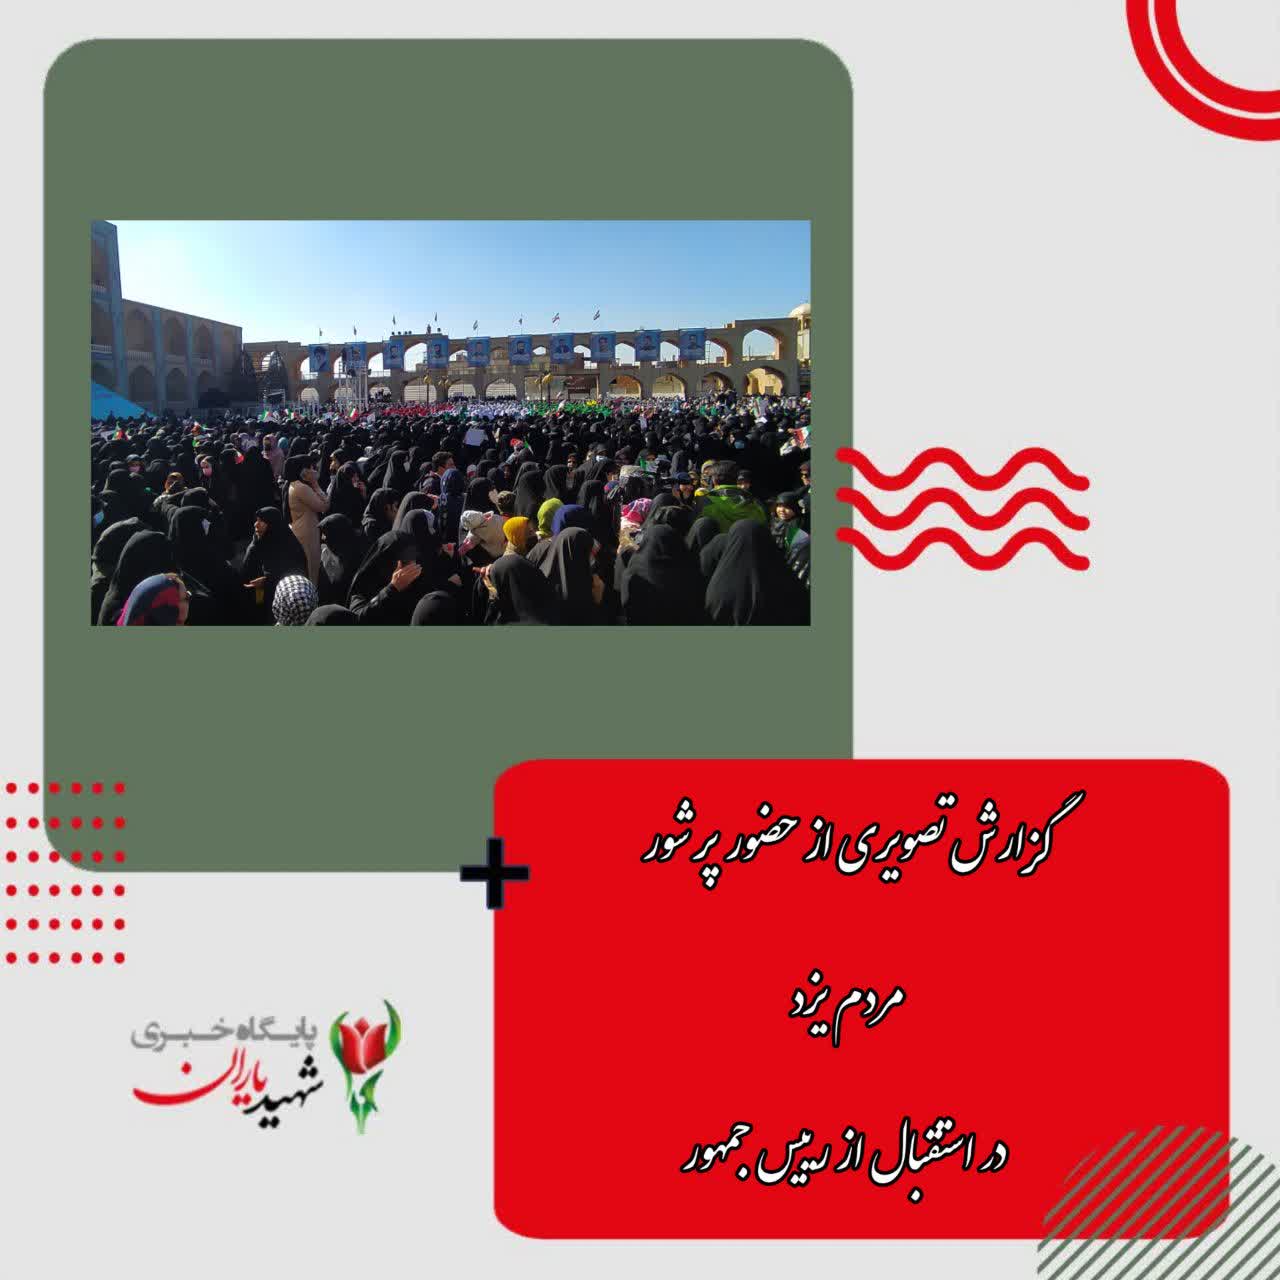 شهروند یزدی در مراسم دیدار مردمی رییس جمهور با مردم یزد: